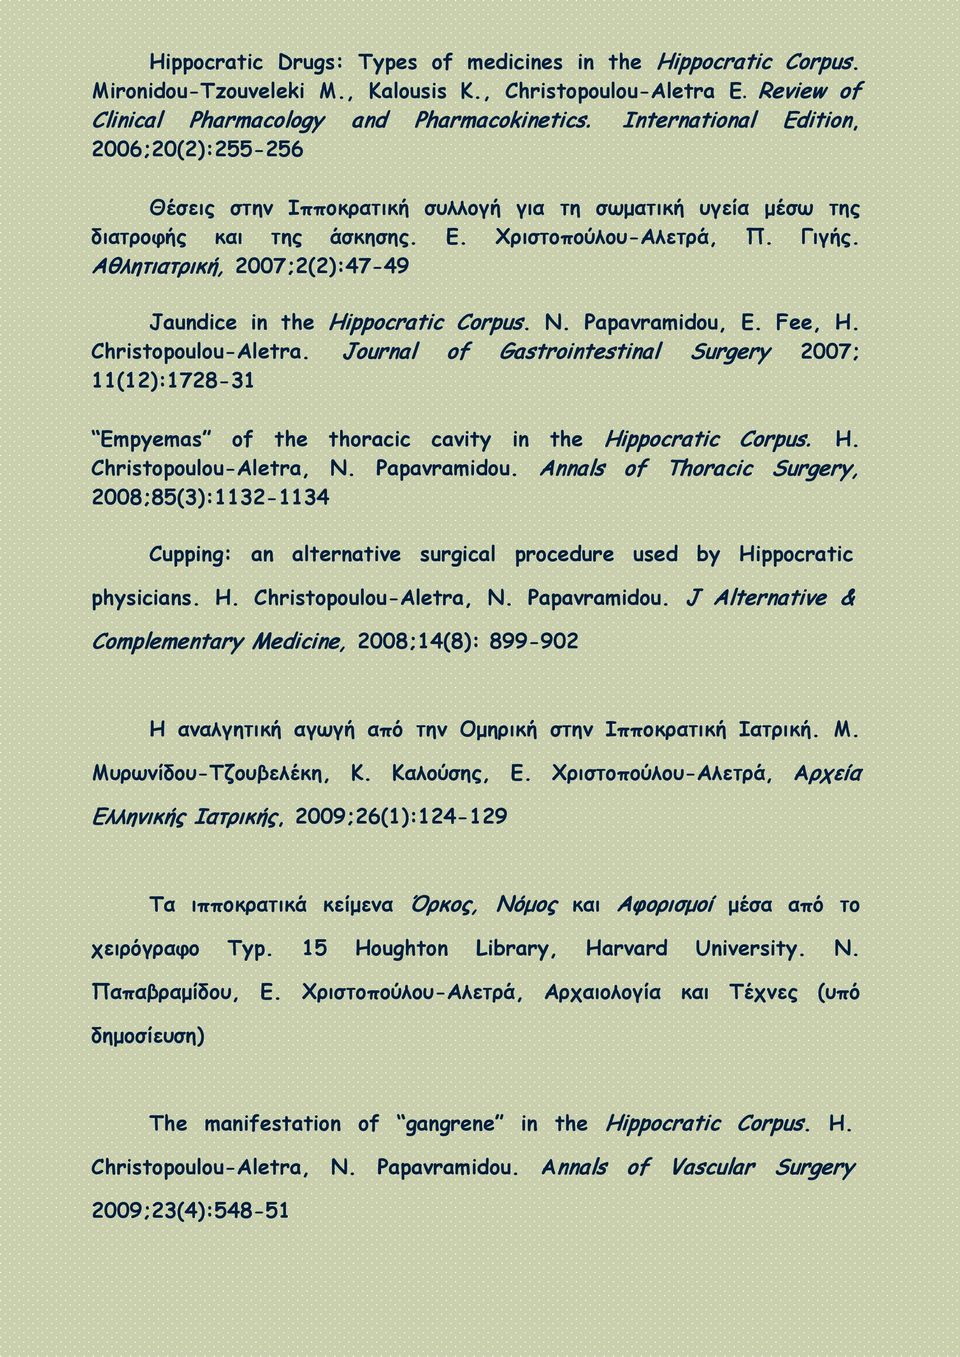 Αθλητιατρική, 2007;2(2):47-49 Jaundice in the Hippocratic Corpus. N. Papavramidou, E. Fee, H. Christopoulou-Aletra.